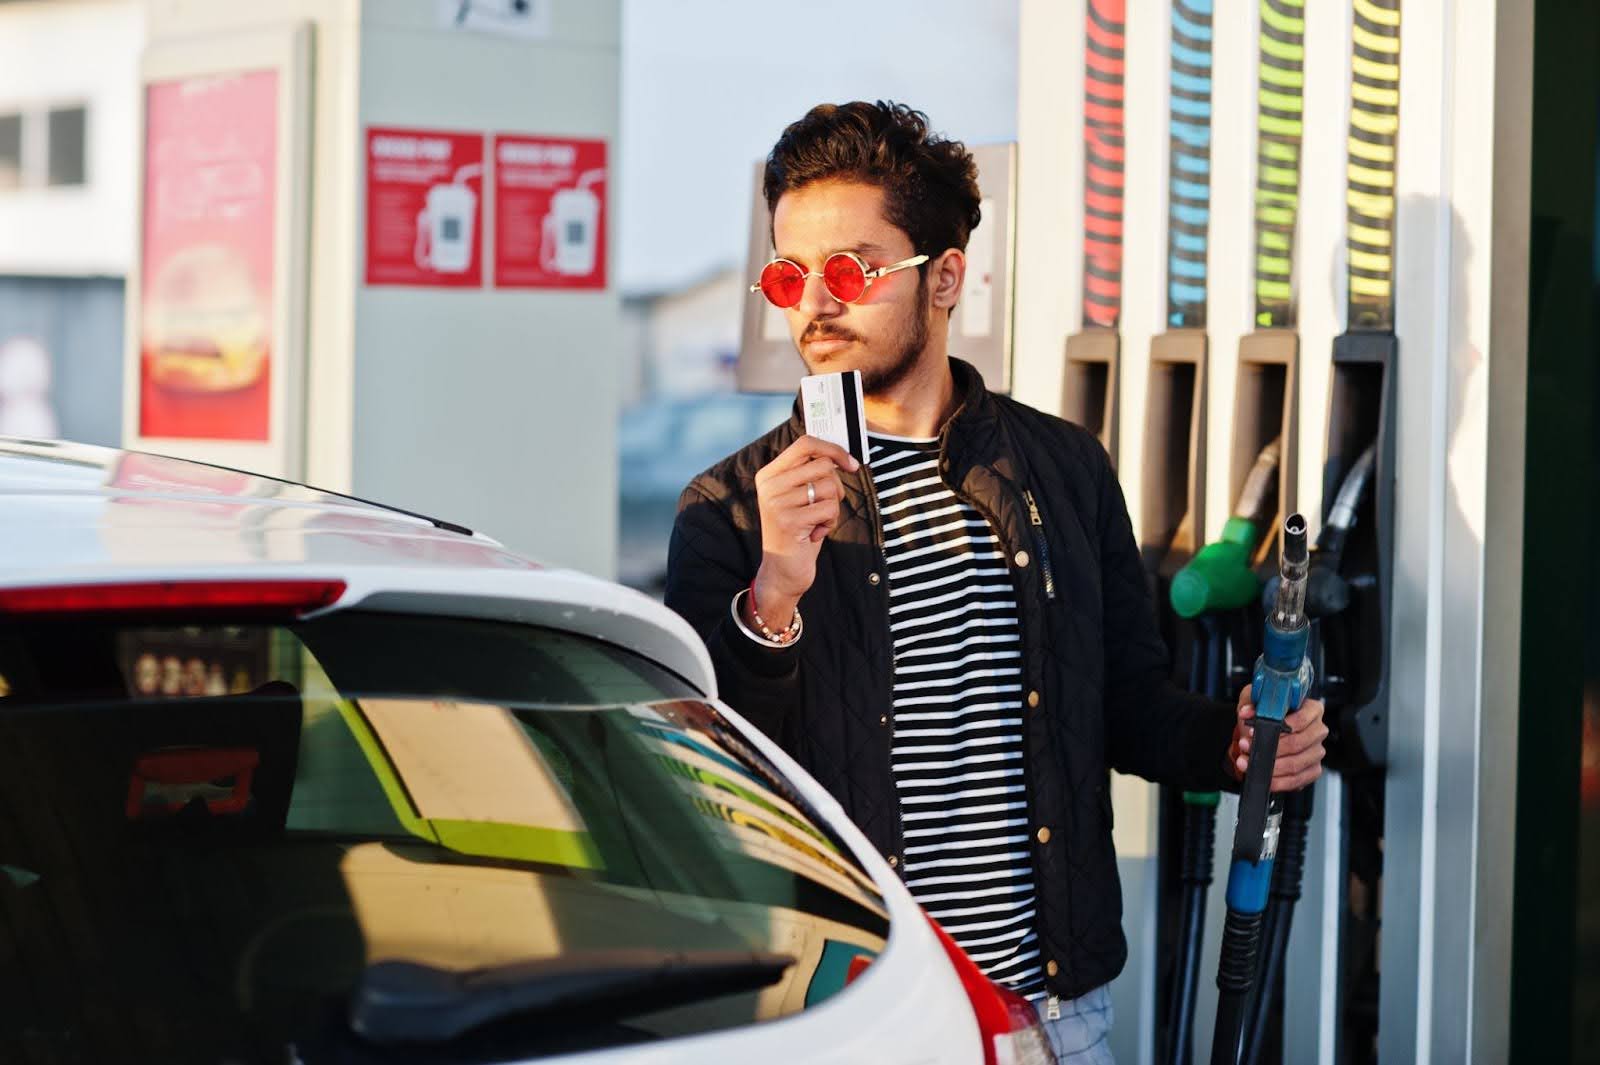 Na imagem, um homem de jaqueta preta está parado em um posto de gasolina, ao lado de um carro. Ele parece pensativo, tentando tomar a decisão entre abastecer o veículo com gasolina aditivada ou comum.